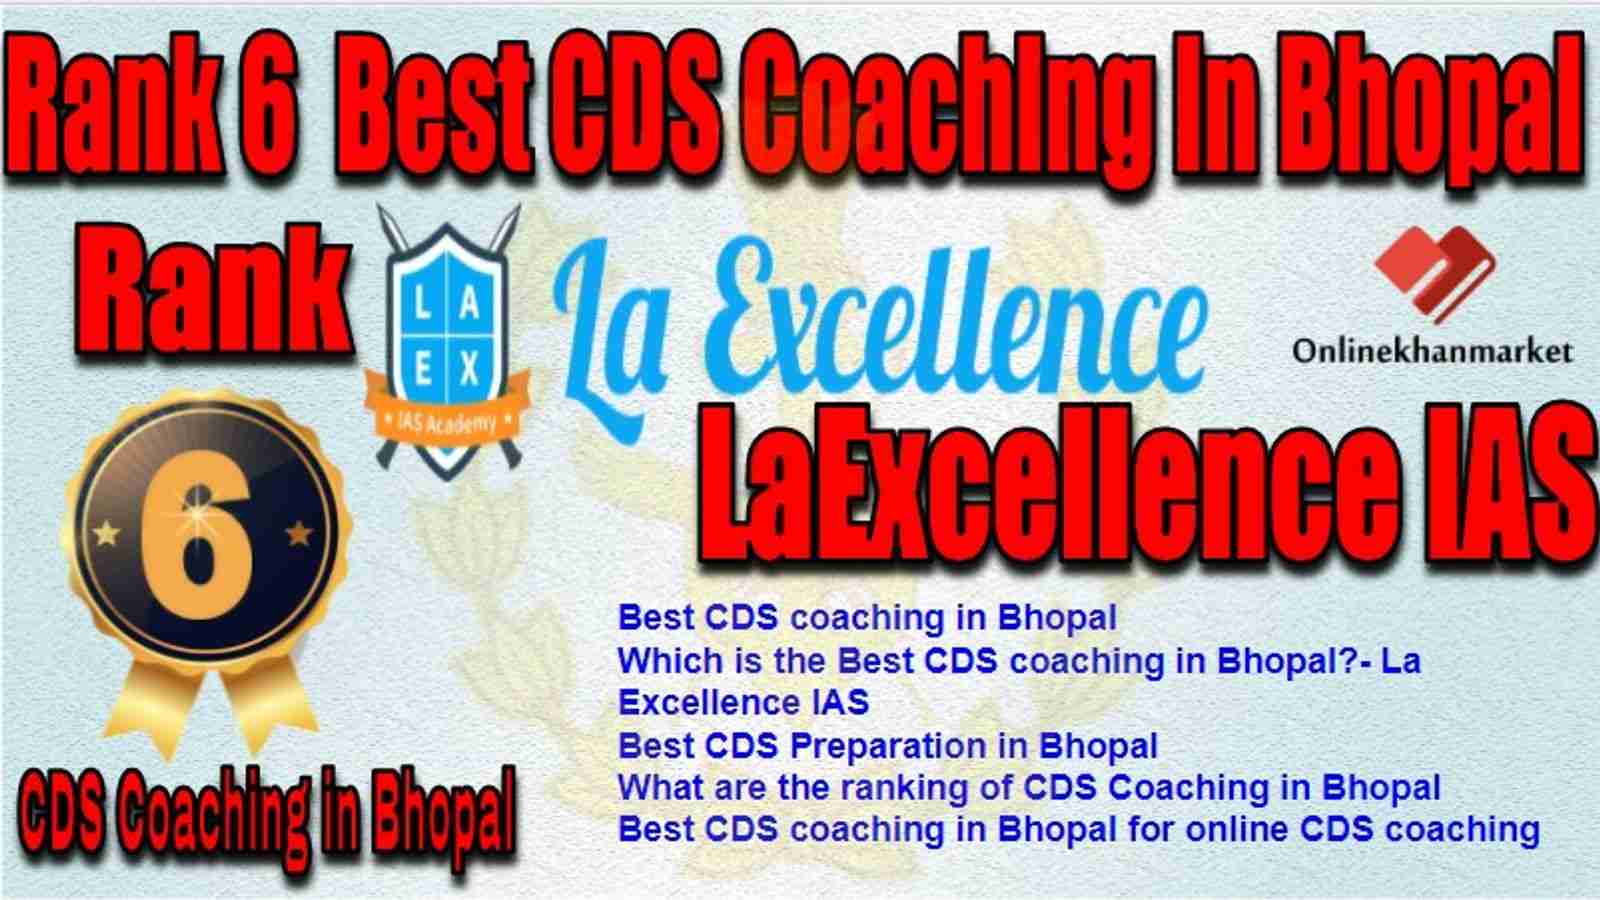 Rank 6 Best CDS Coaching in bhopal